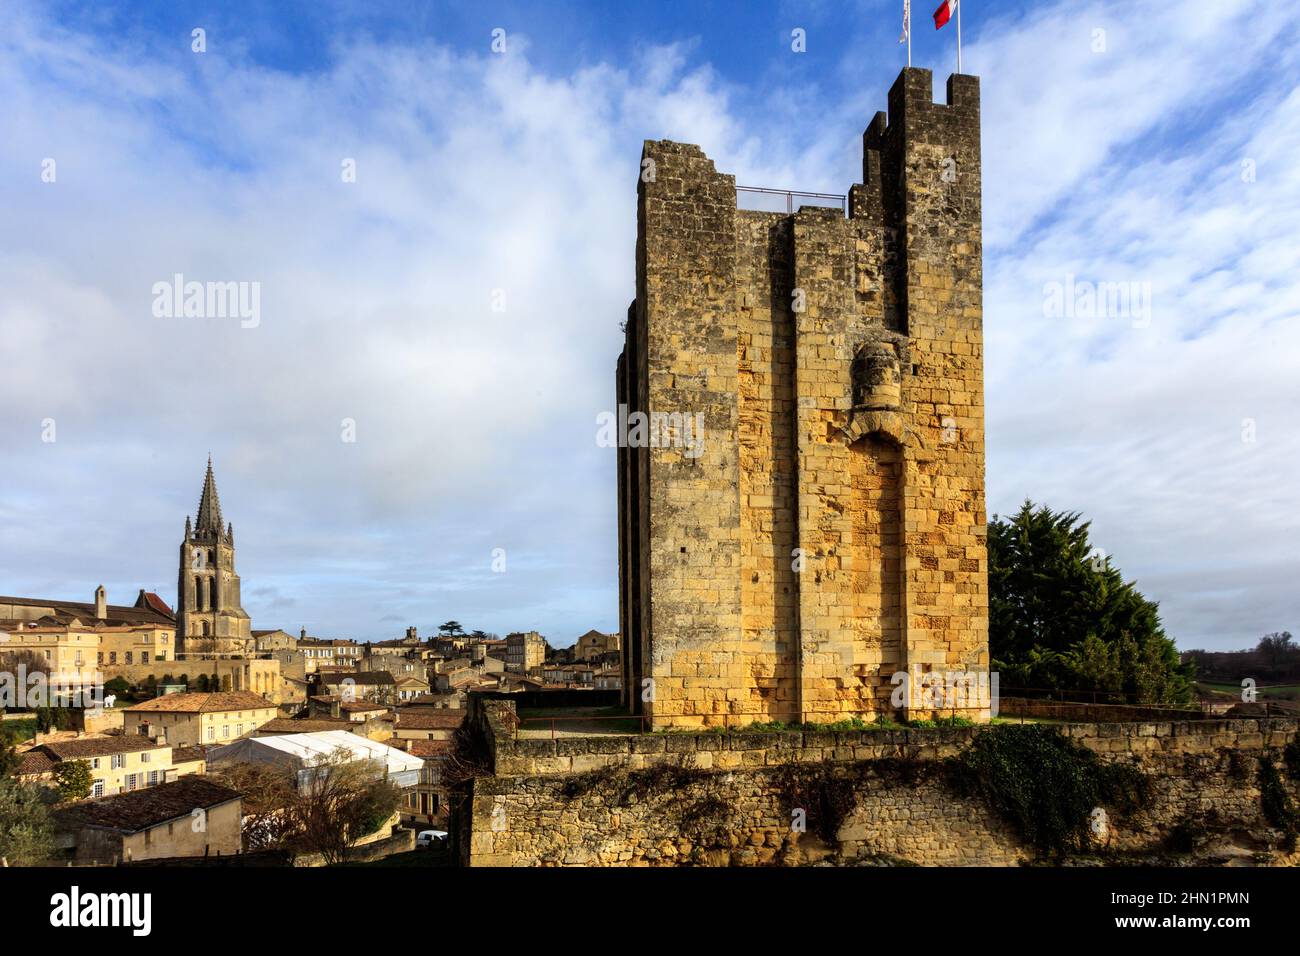 Castello di Saint Emilion, un borgo medievale nella zona di Bordeaux in Francia. La chiesa monolitica è stata dichiarata dall'UNESCO un sito patrimonio dell'umanità. Foto Stock